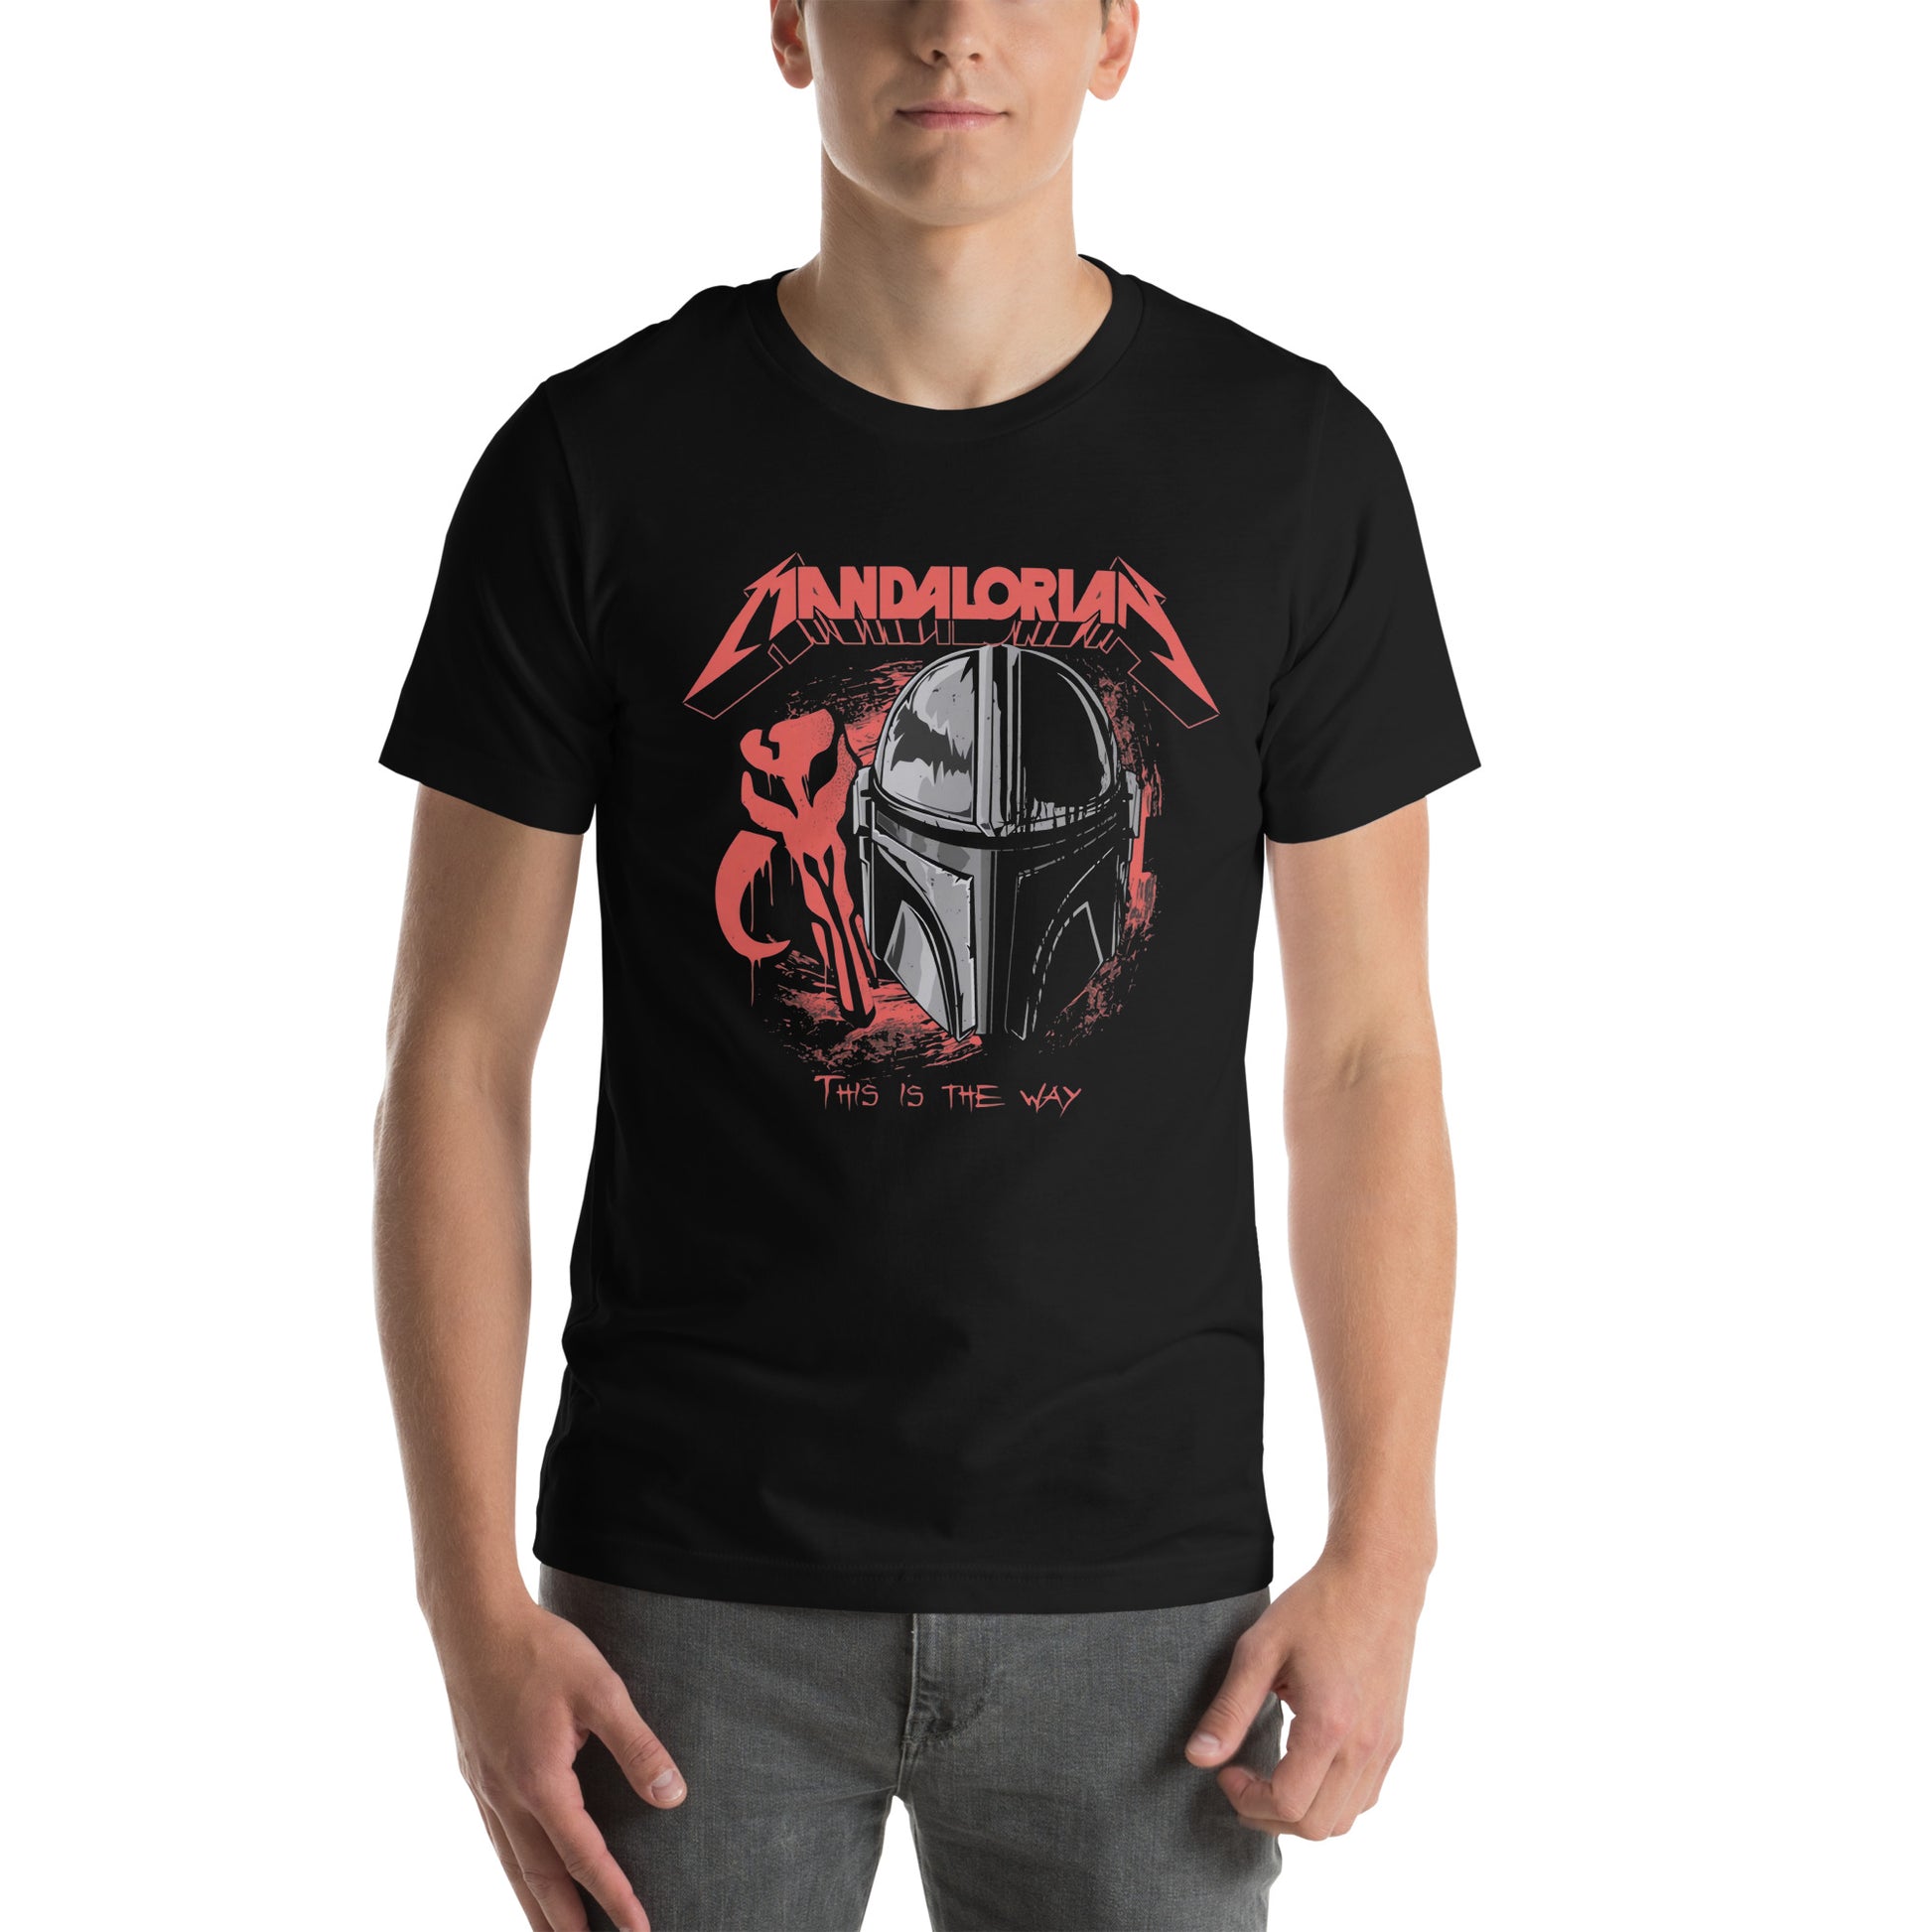 Camiseta Mandalorian Tribute, Disponible en la mejor tienda online para comprar tu merch favorita, la mejor Calidad, compra Ahora en Superstar! 